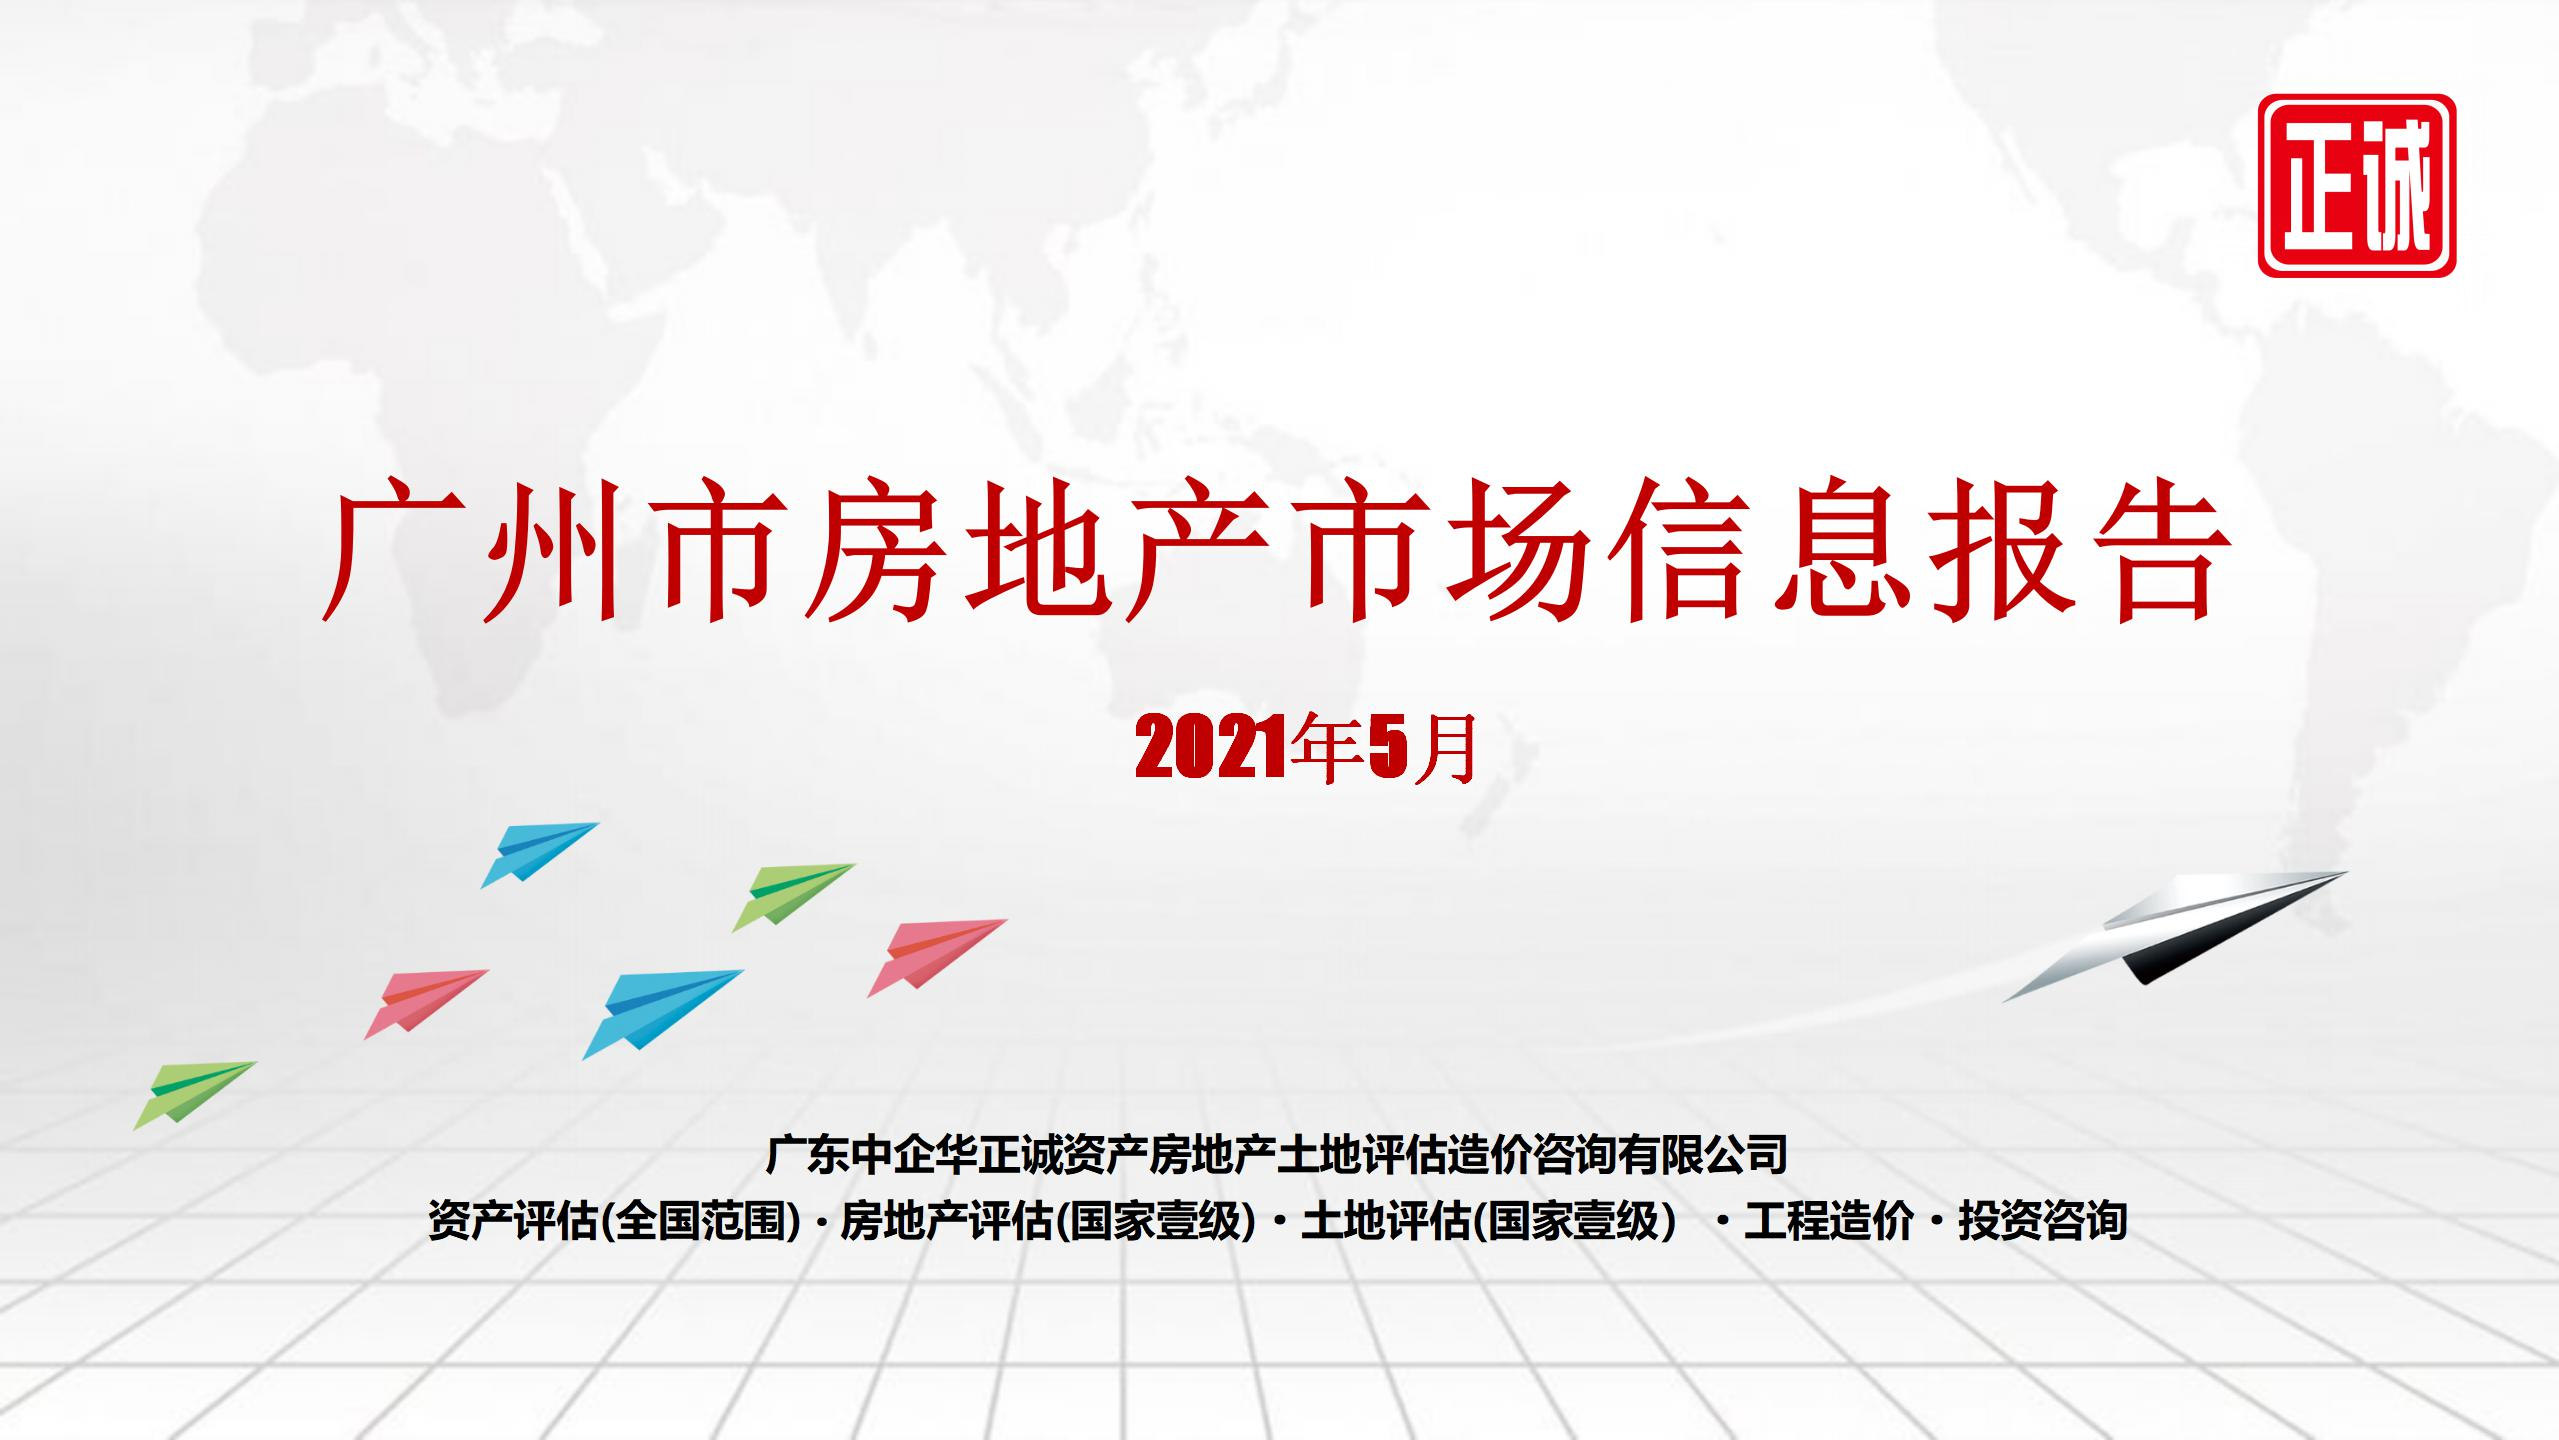 2021年5月廣州市房地産市場信息報告